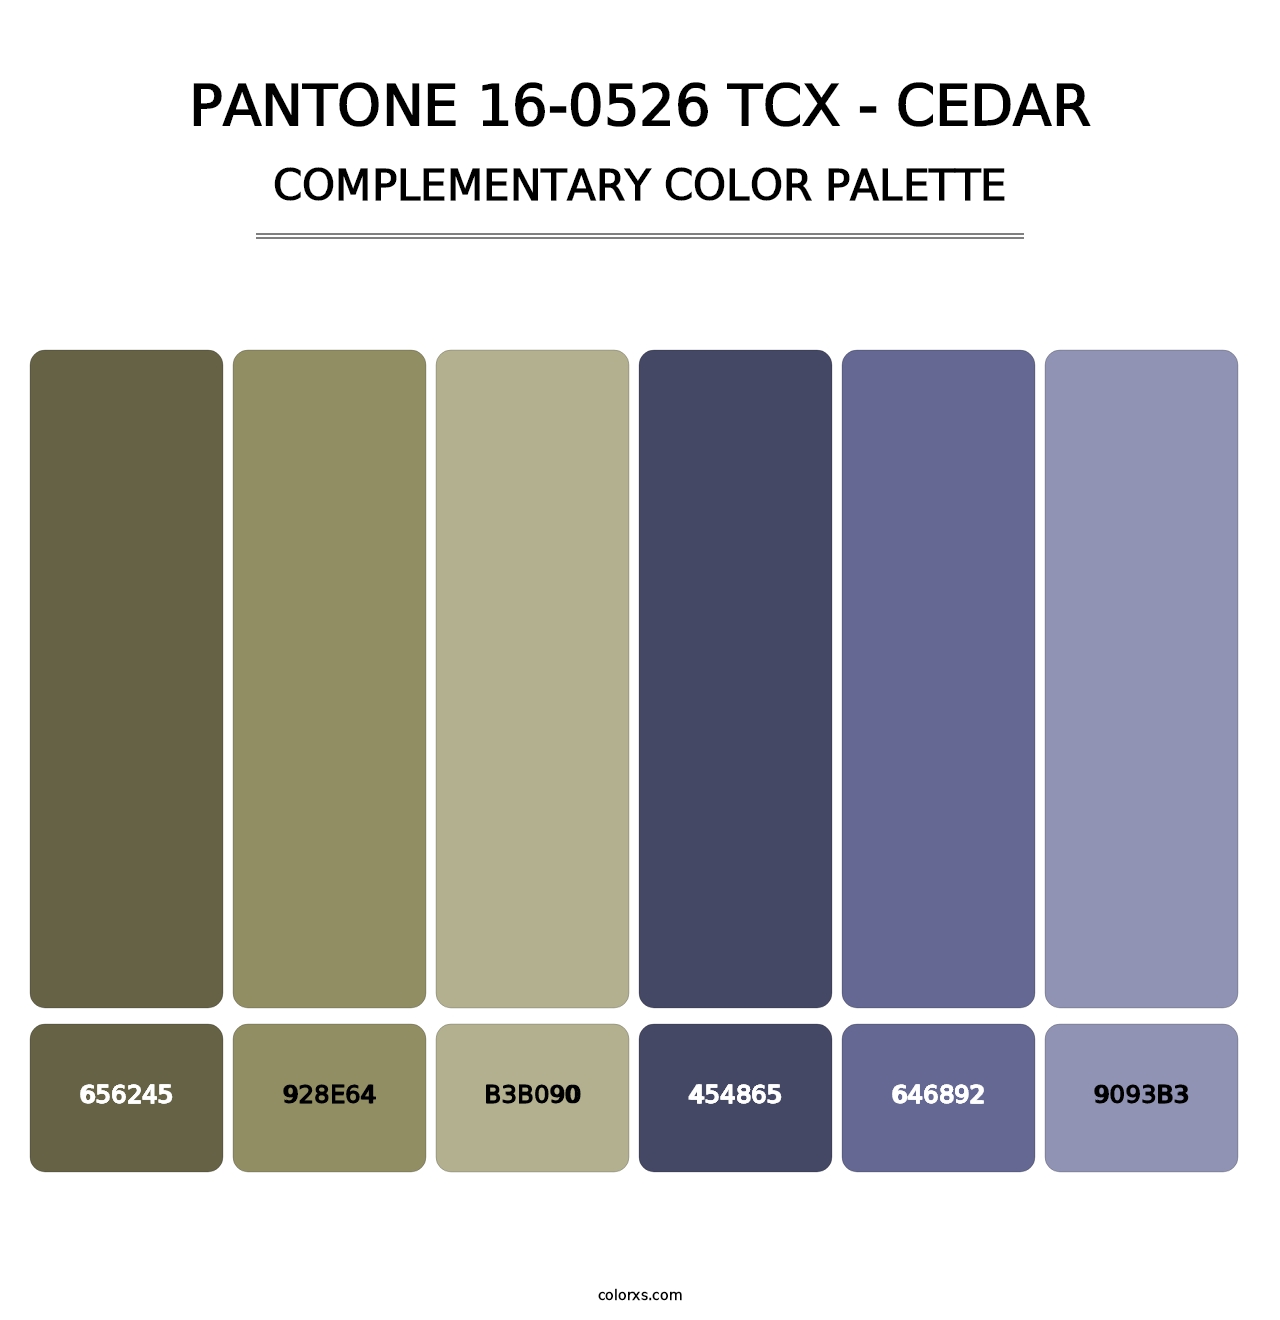 PANTONE 16-0526 TCX - Cedar - Complementary Color Palette